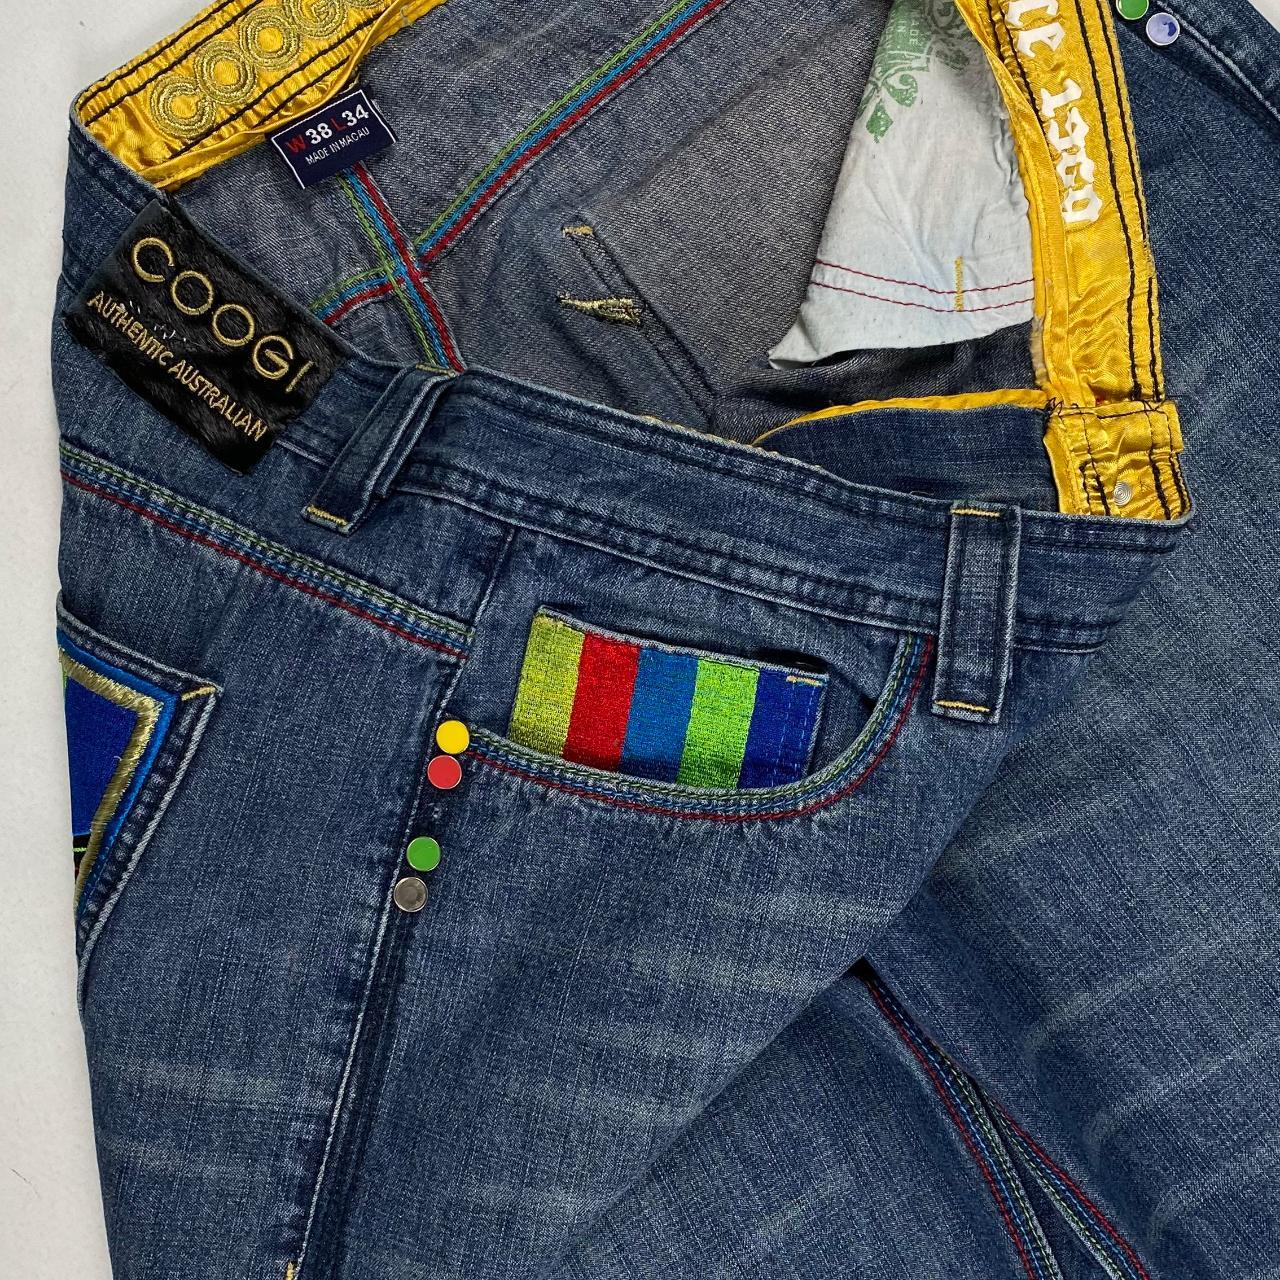 Authentic Vintage Coogi Jeans  (38")